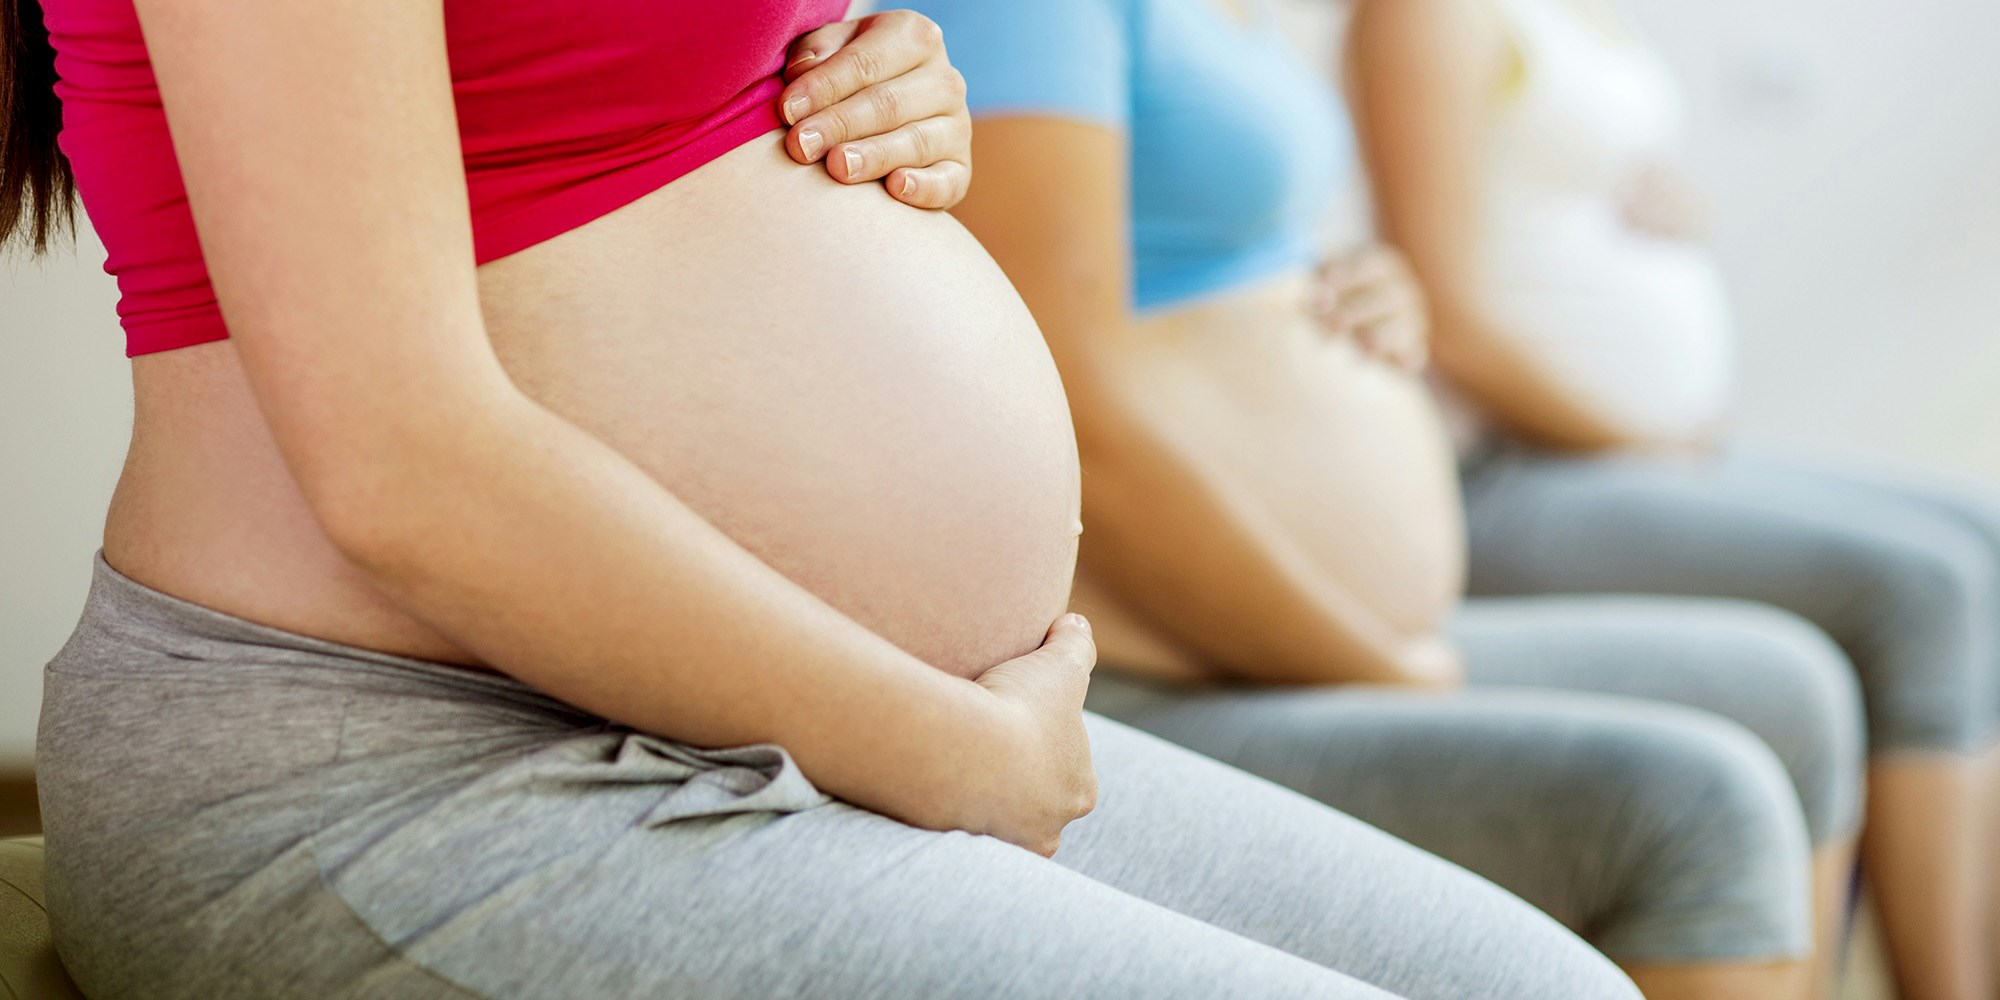 gravide maver træning fof randers favrskov mariagerfjord